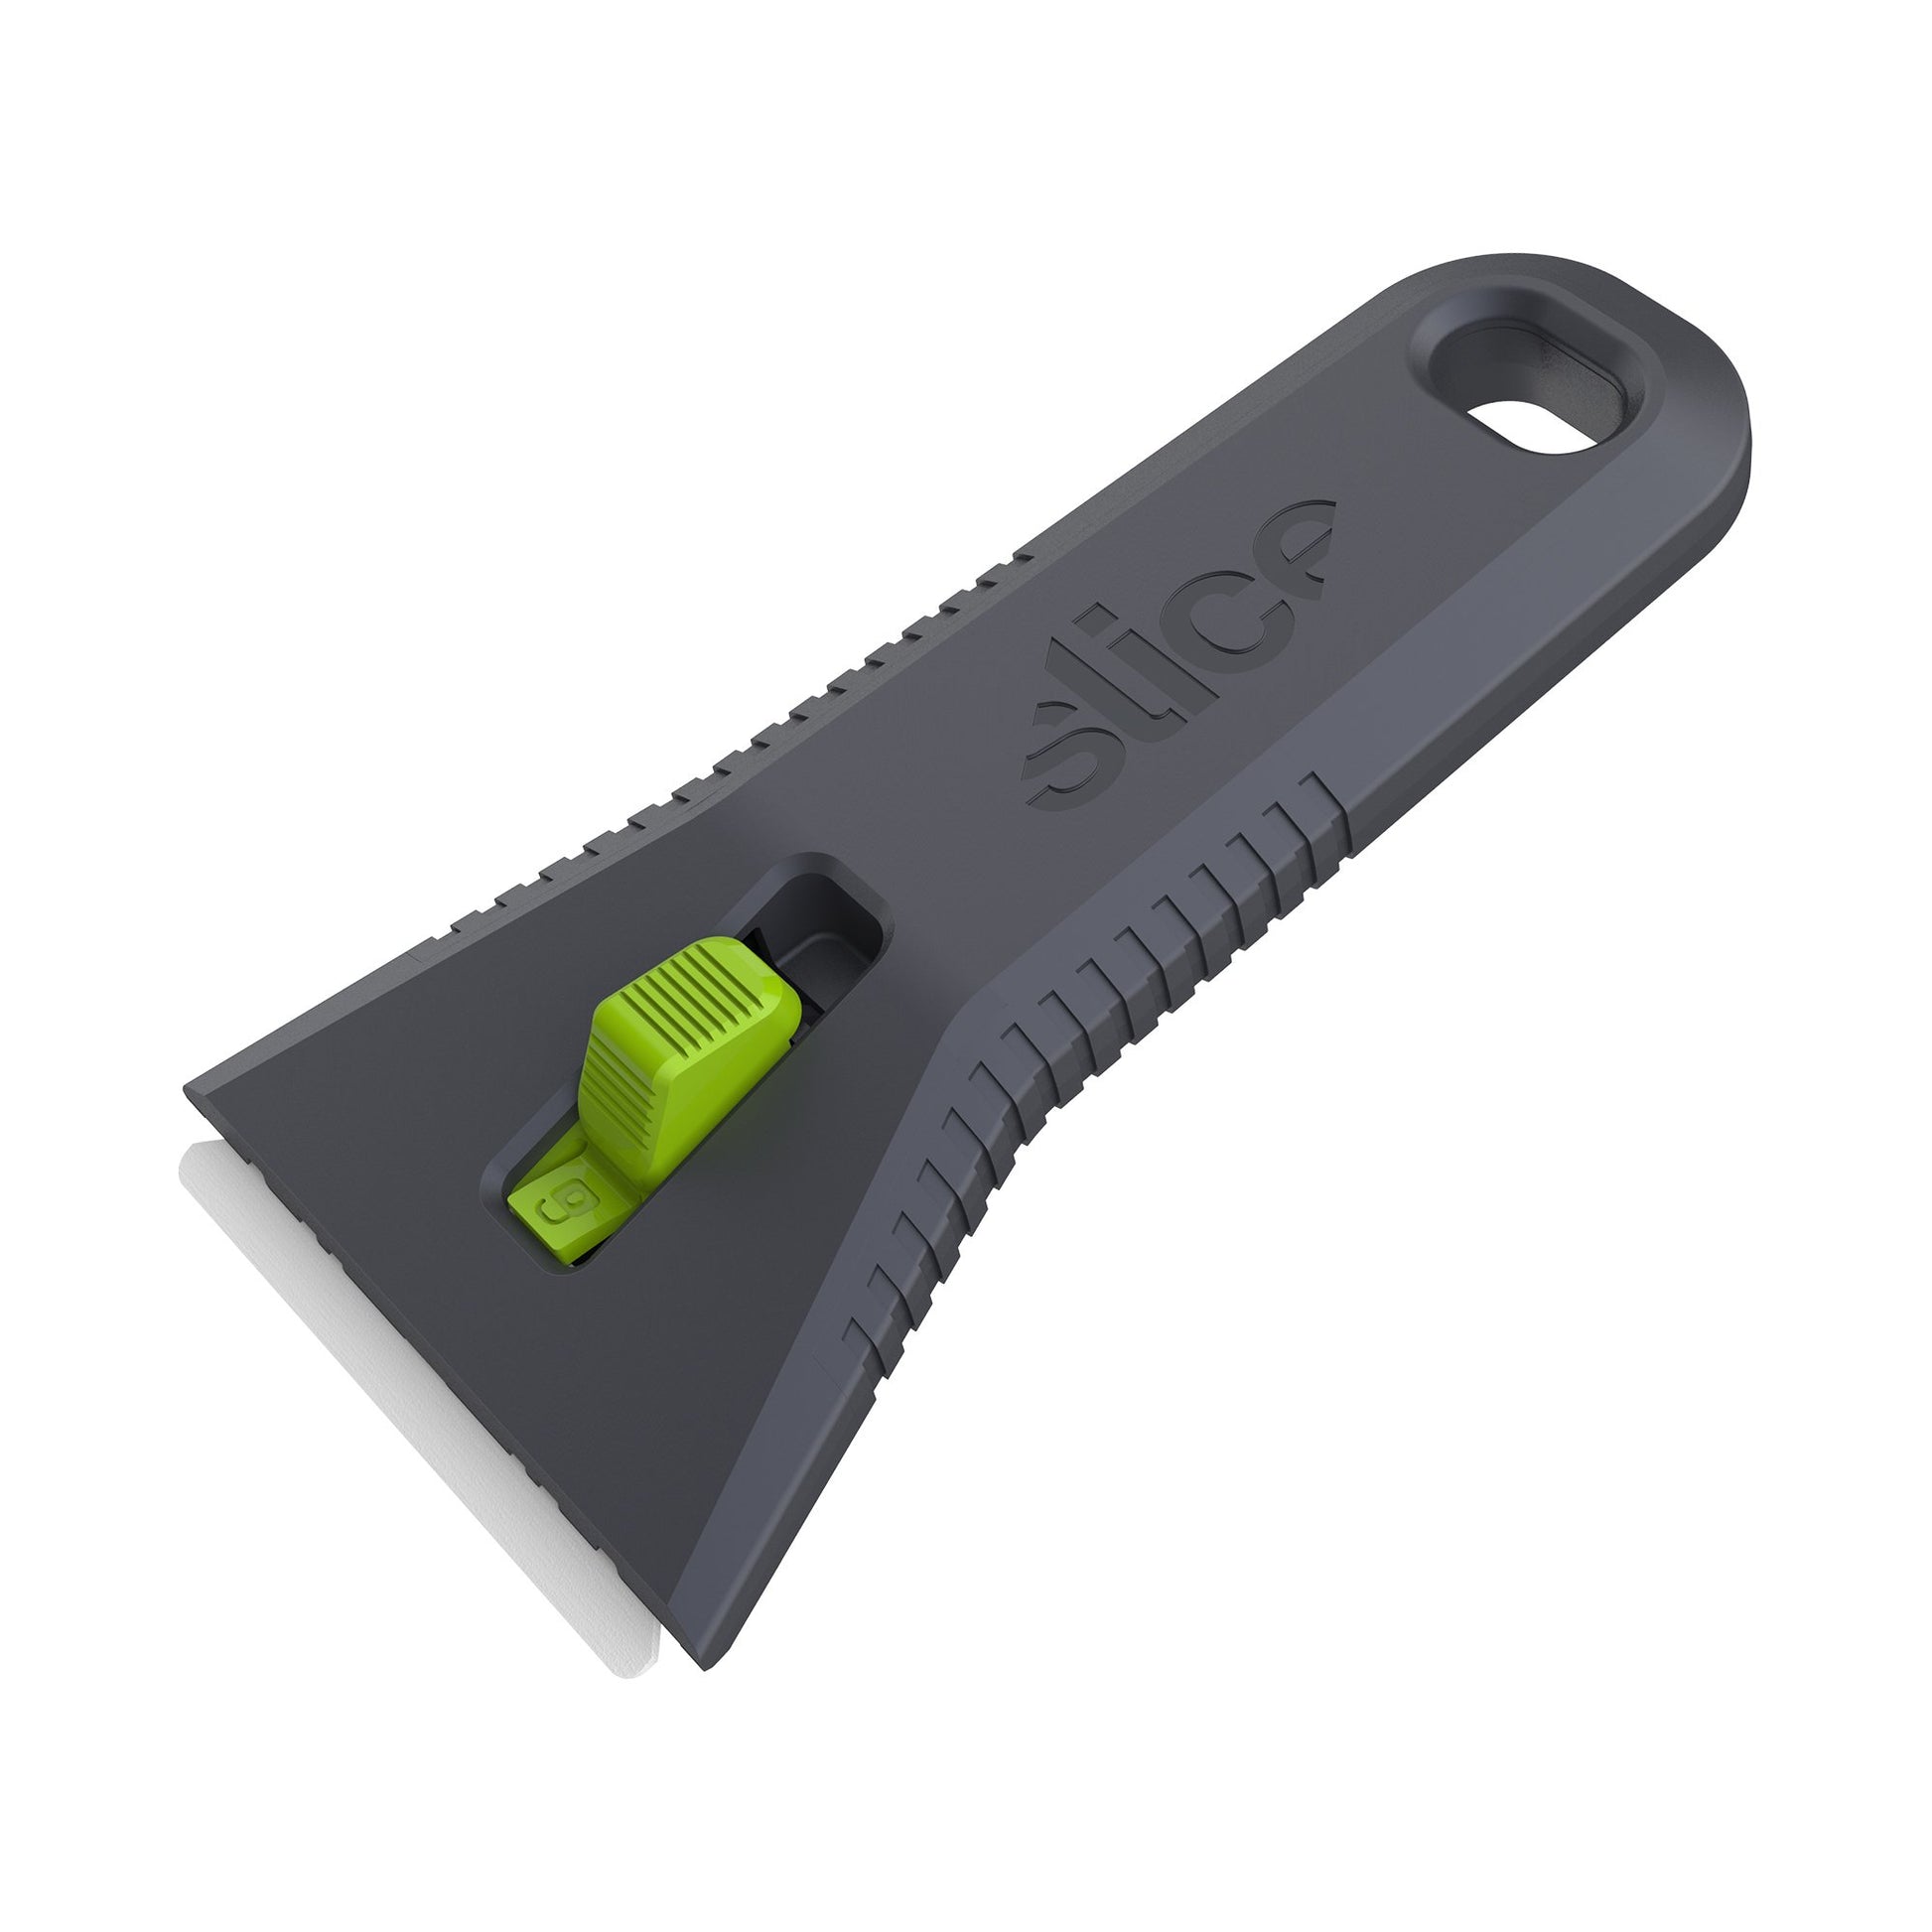 The Slice® 10593 Auto-Retractable Utility Scraper